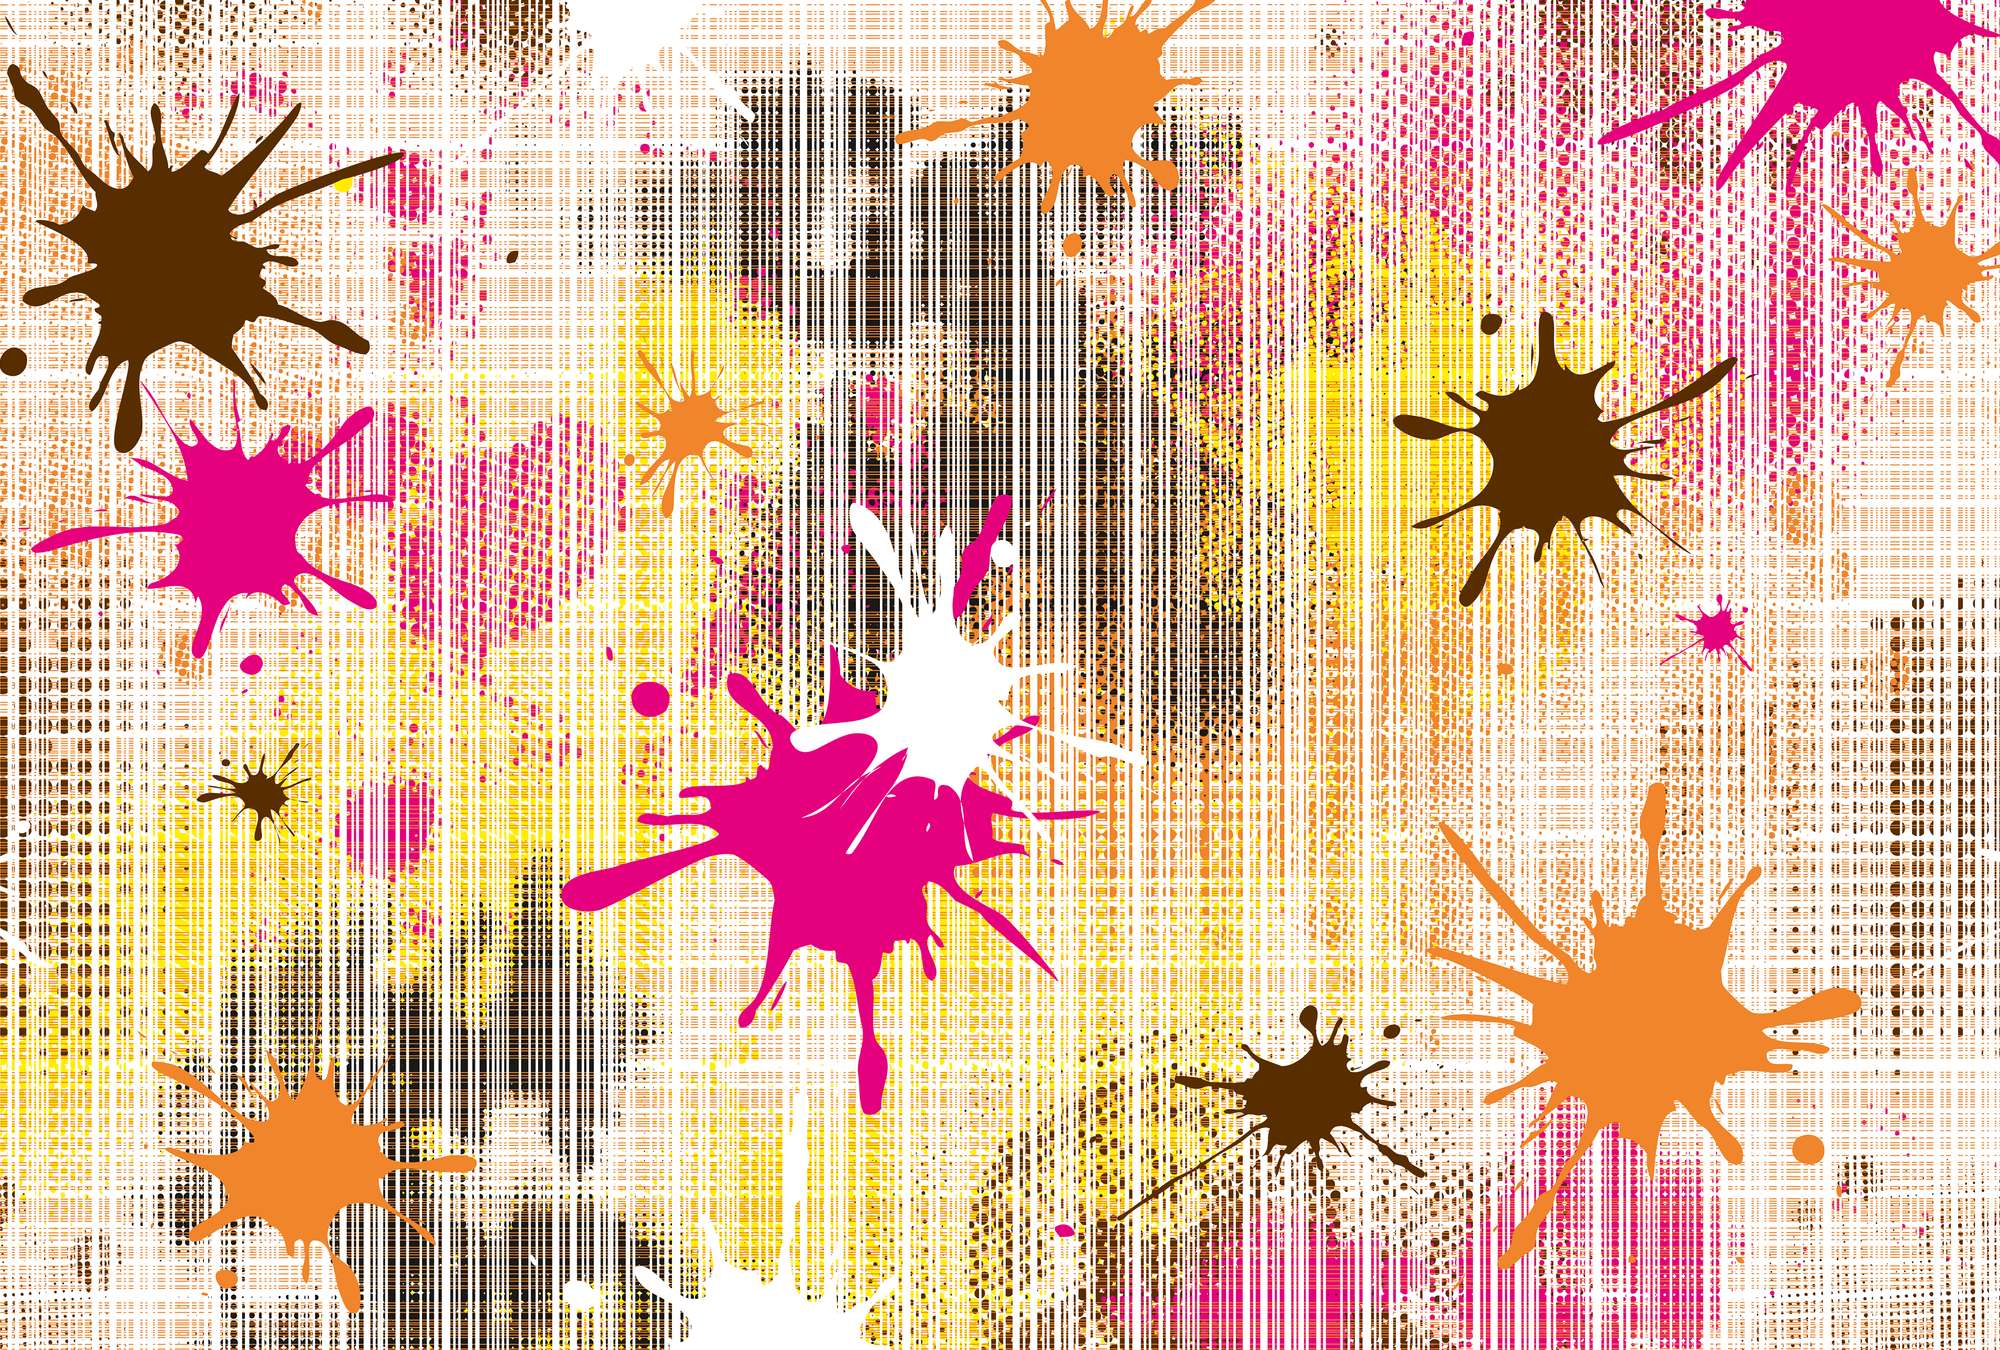             Mural gráfico con salpicaduras de pintura de colores
        